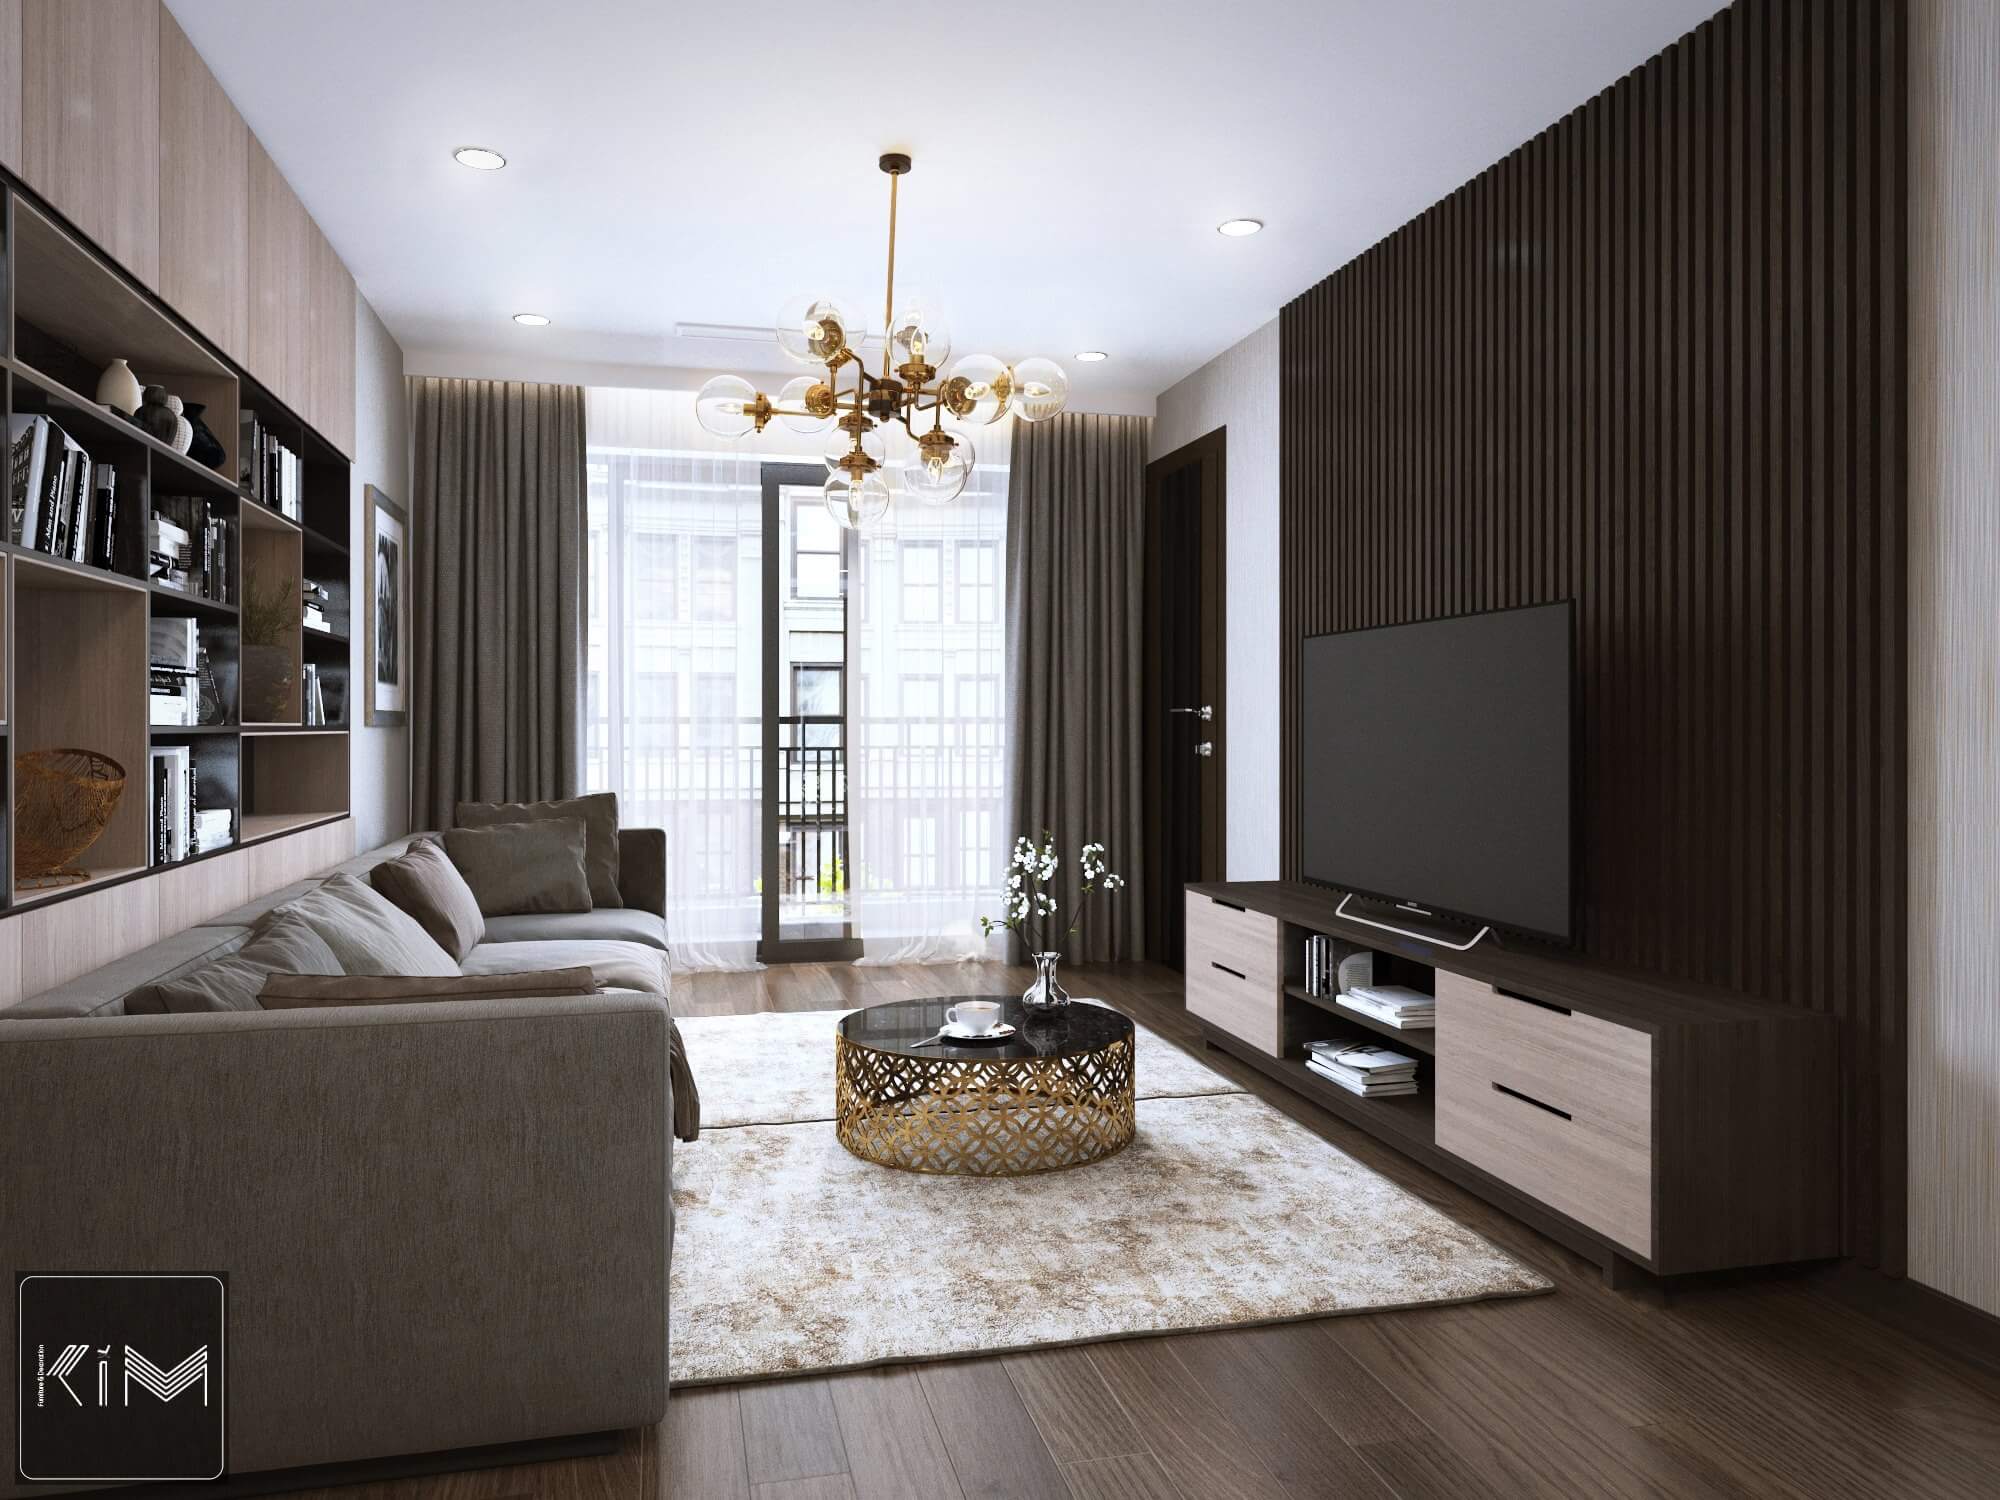 Thiết kế phòng khách với lam gỗ vách tivi tại căn hộ Five Star Garden của KIM furniture